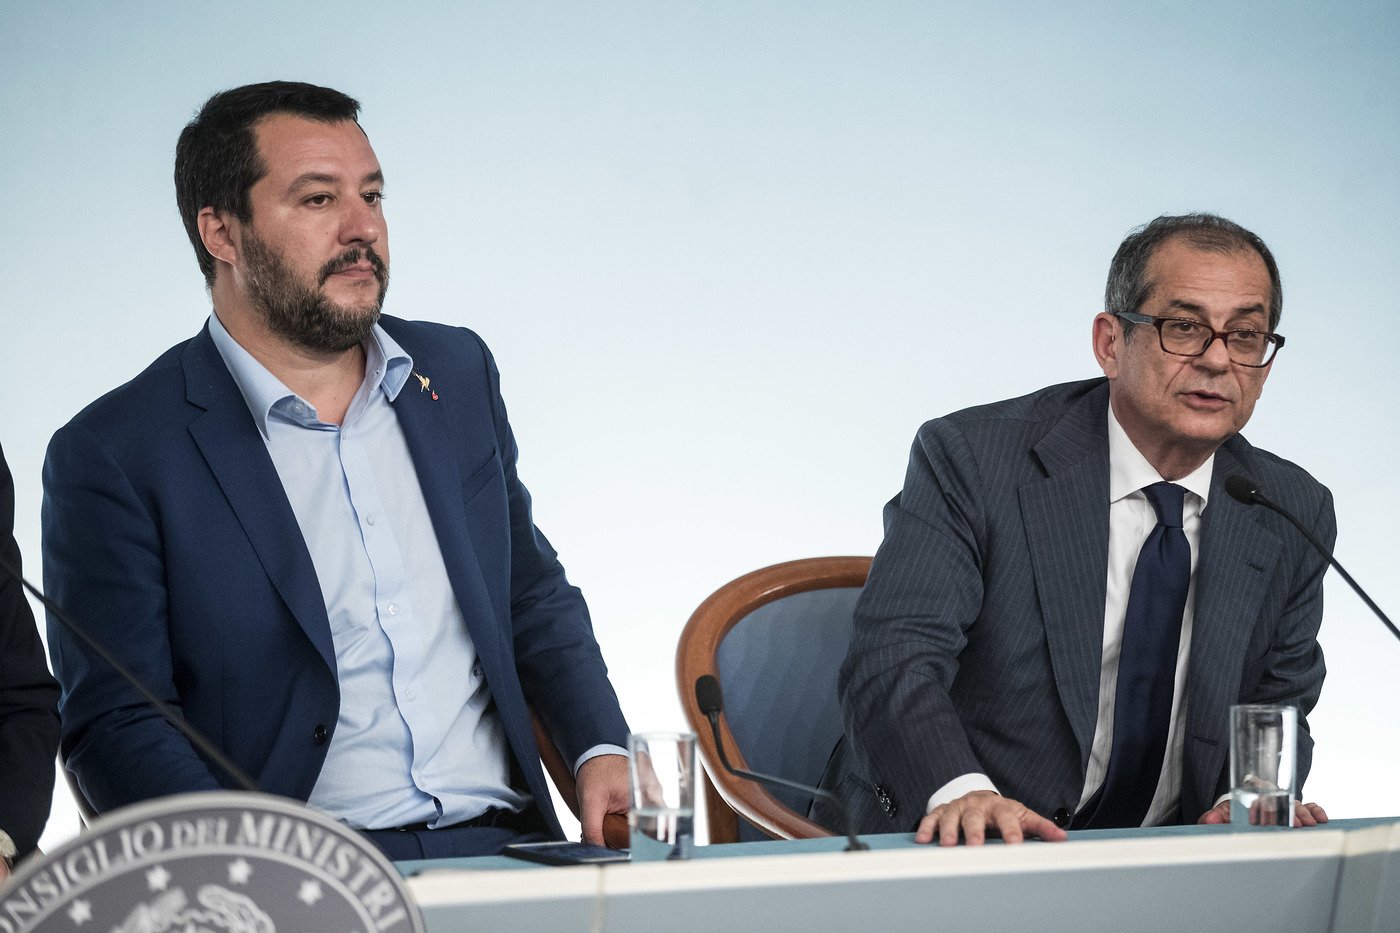 Matteo Salvini e Giovanni Tria